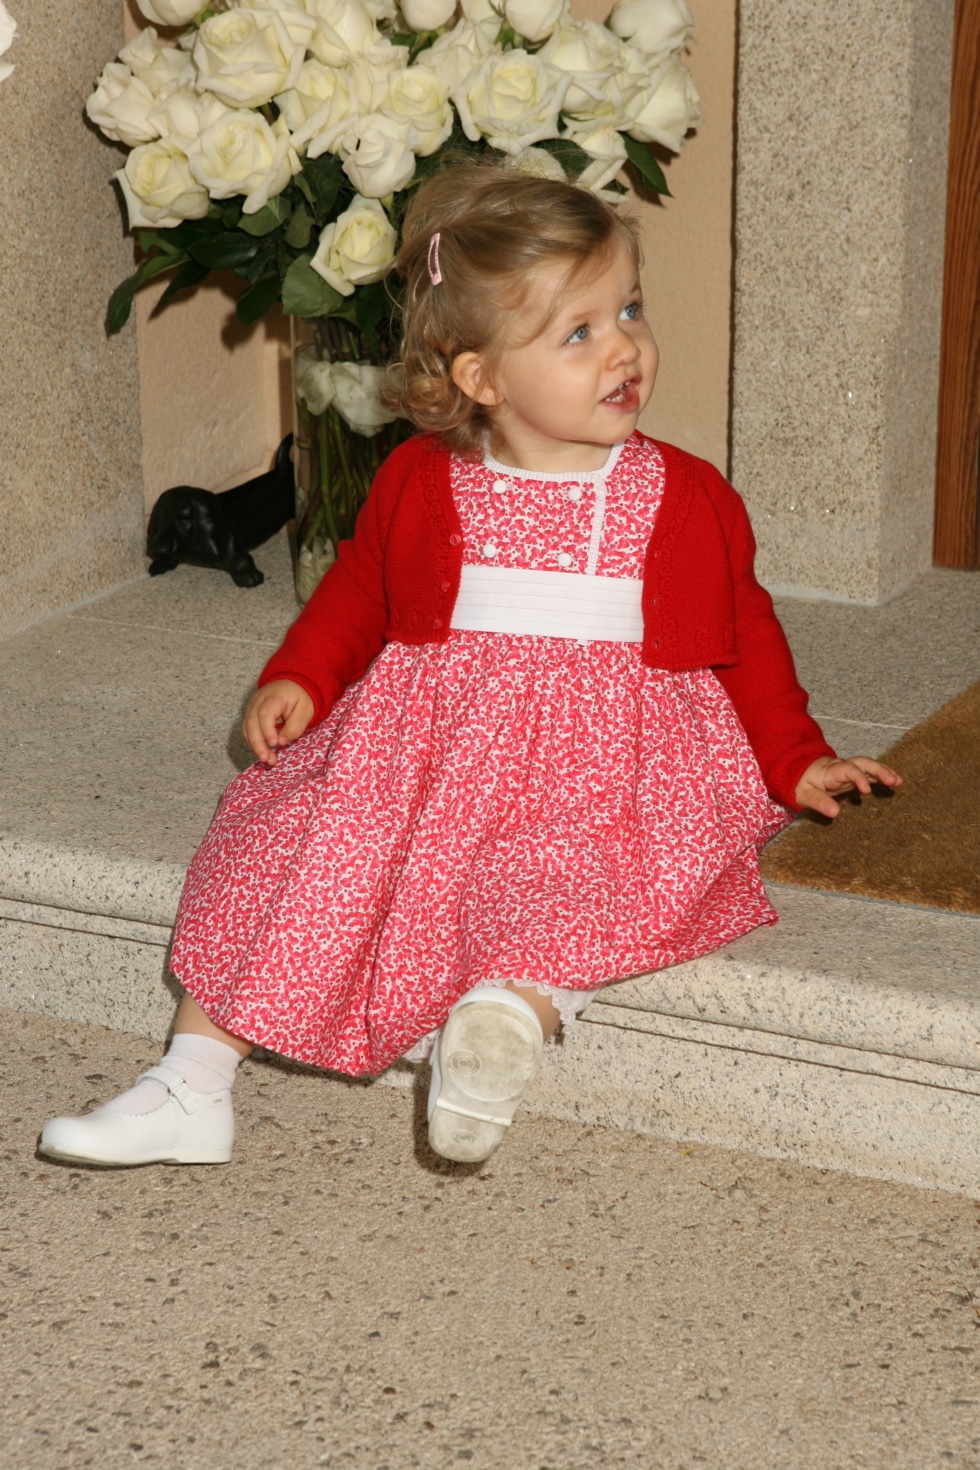 En esta imagen de 2007 se ve a la princesa Leonor (el 5 de abril) al llegar a Zarzuela tras el nacimiento de su hermana menor